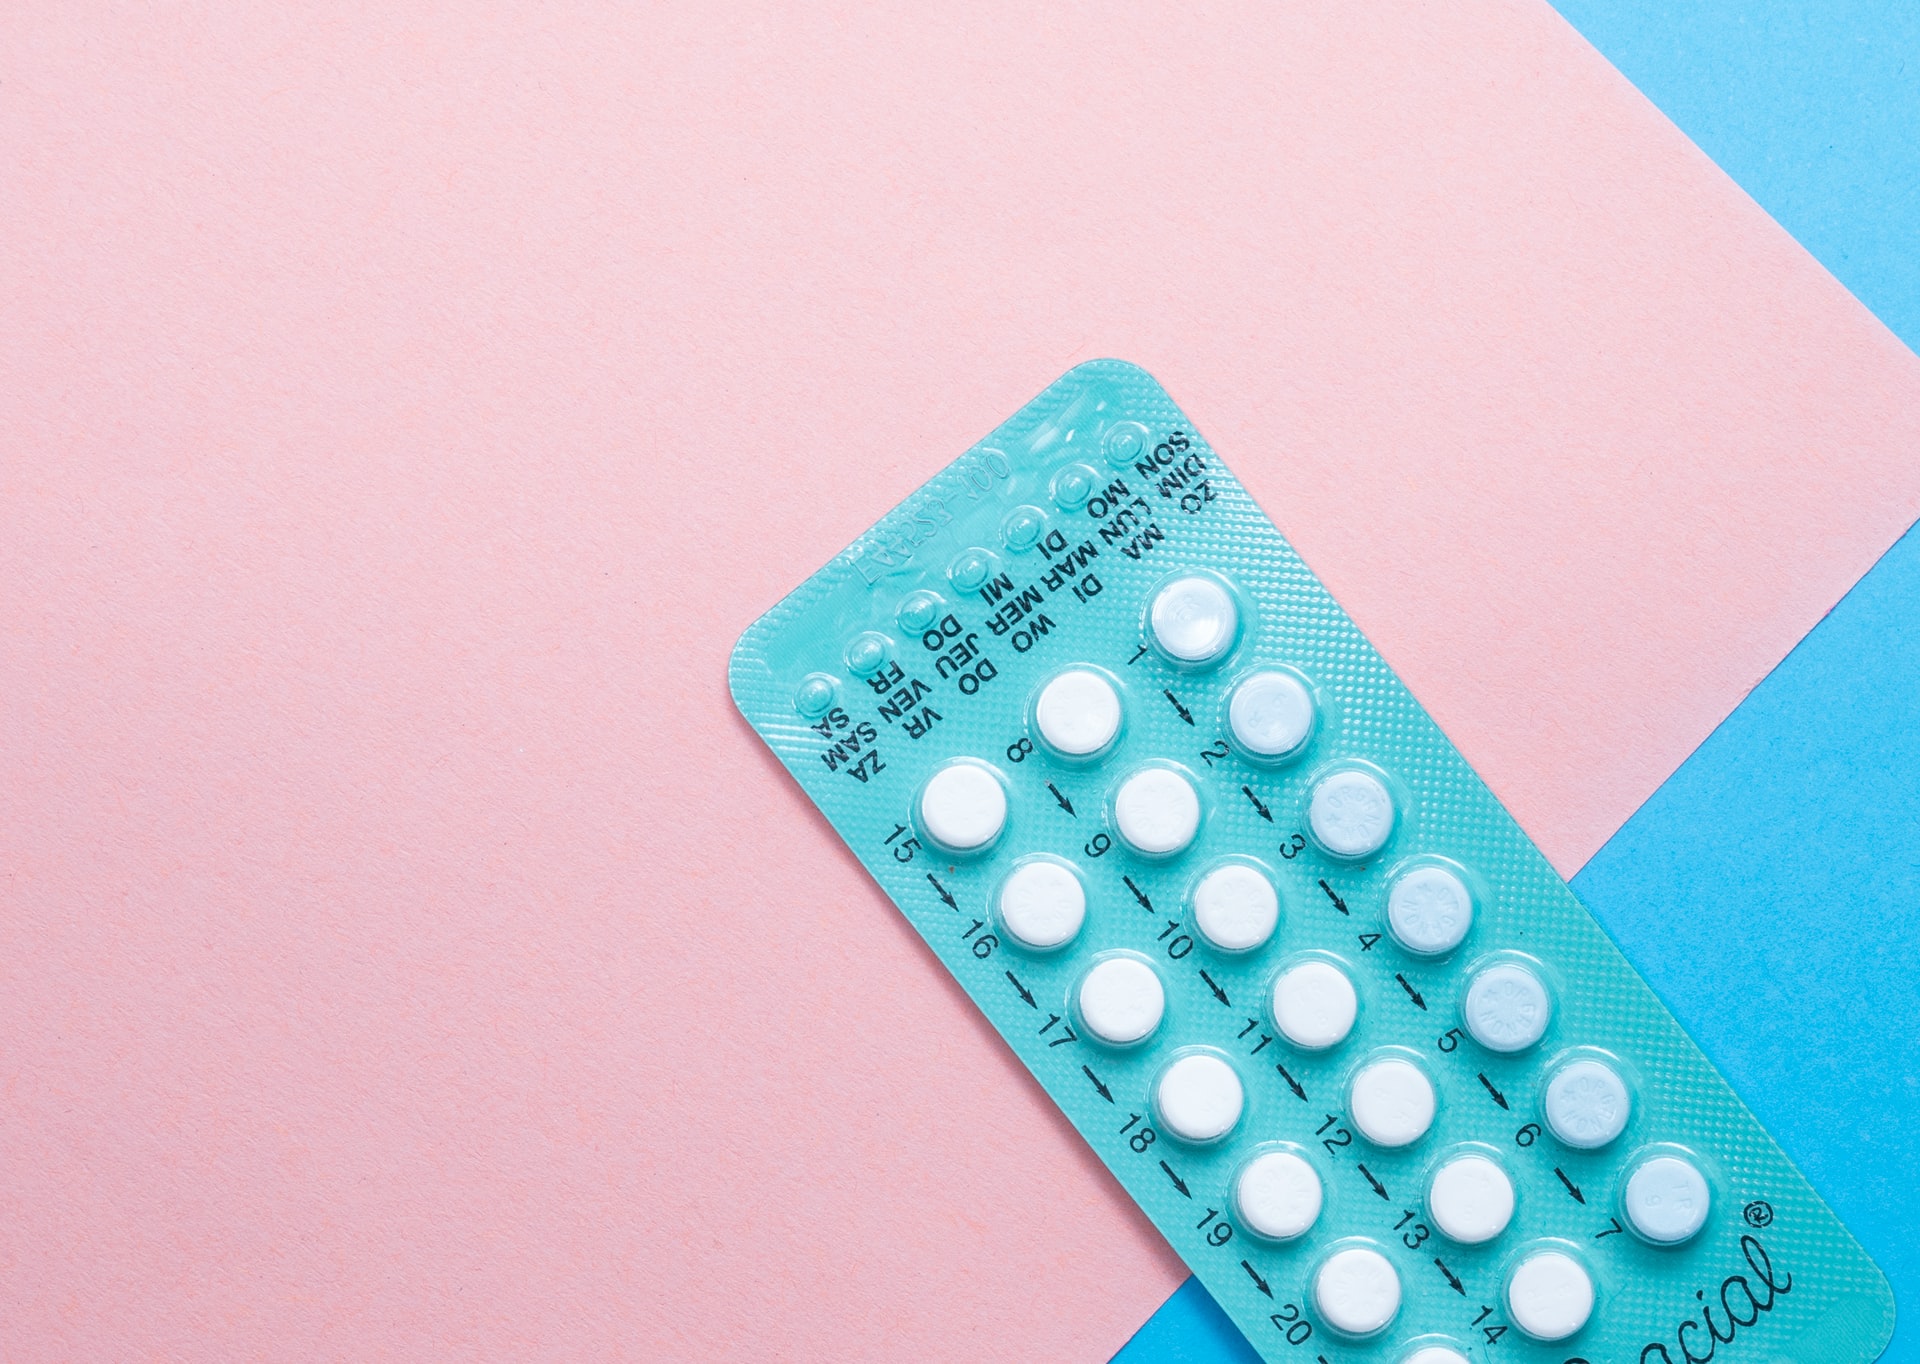 Antykoncepcja hormonalna: jak wybrać najlepszą metodę?